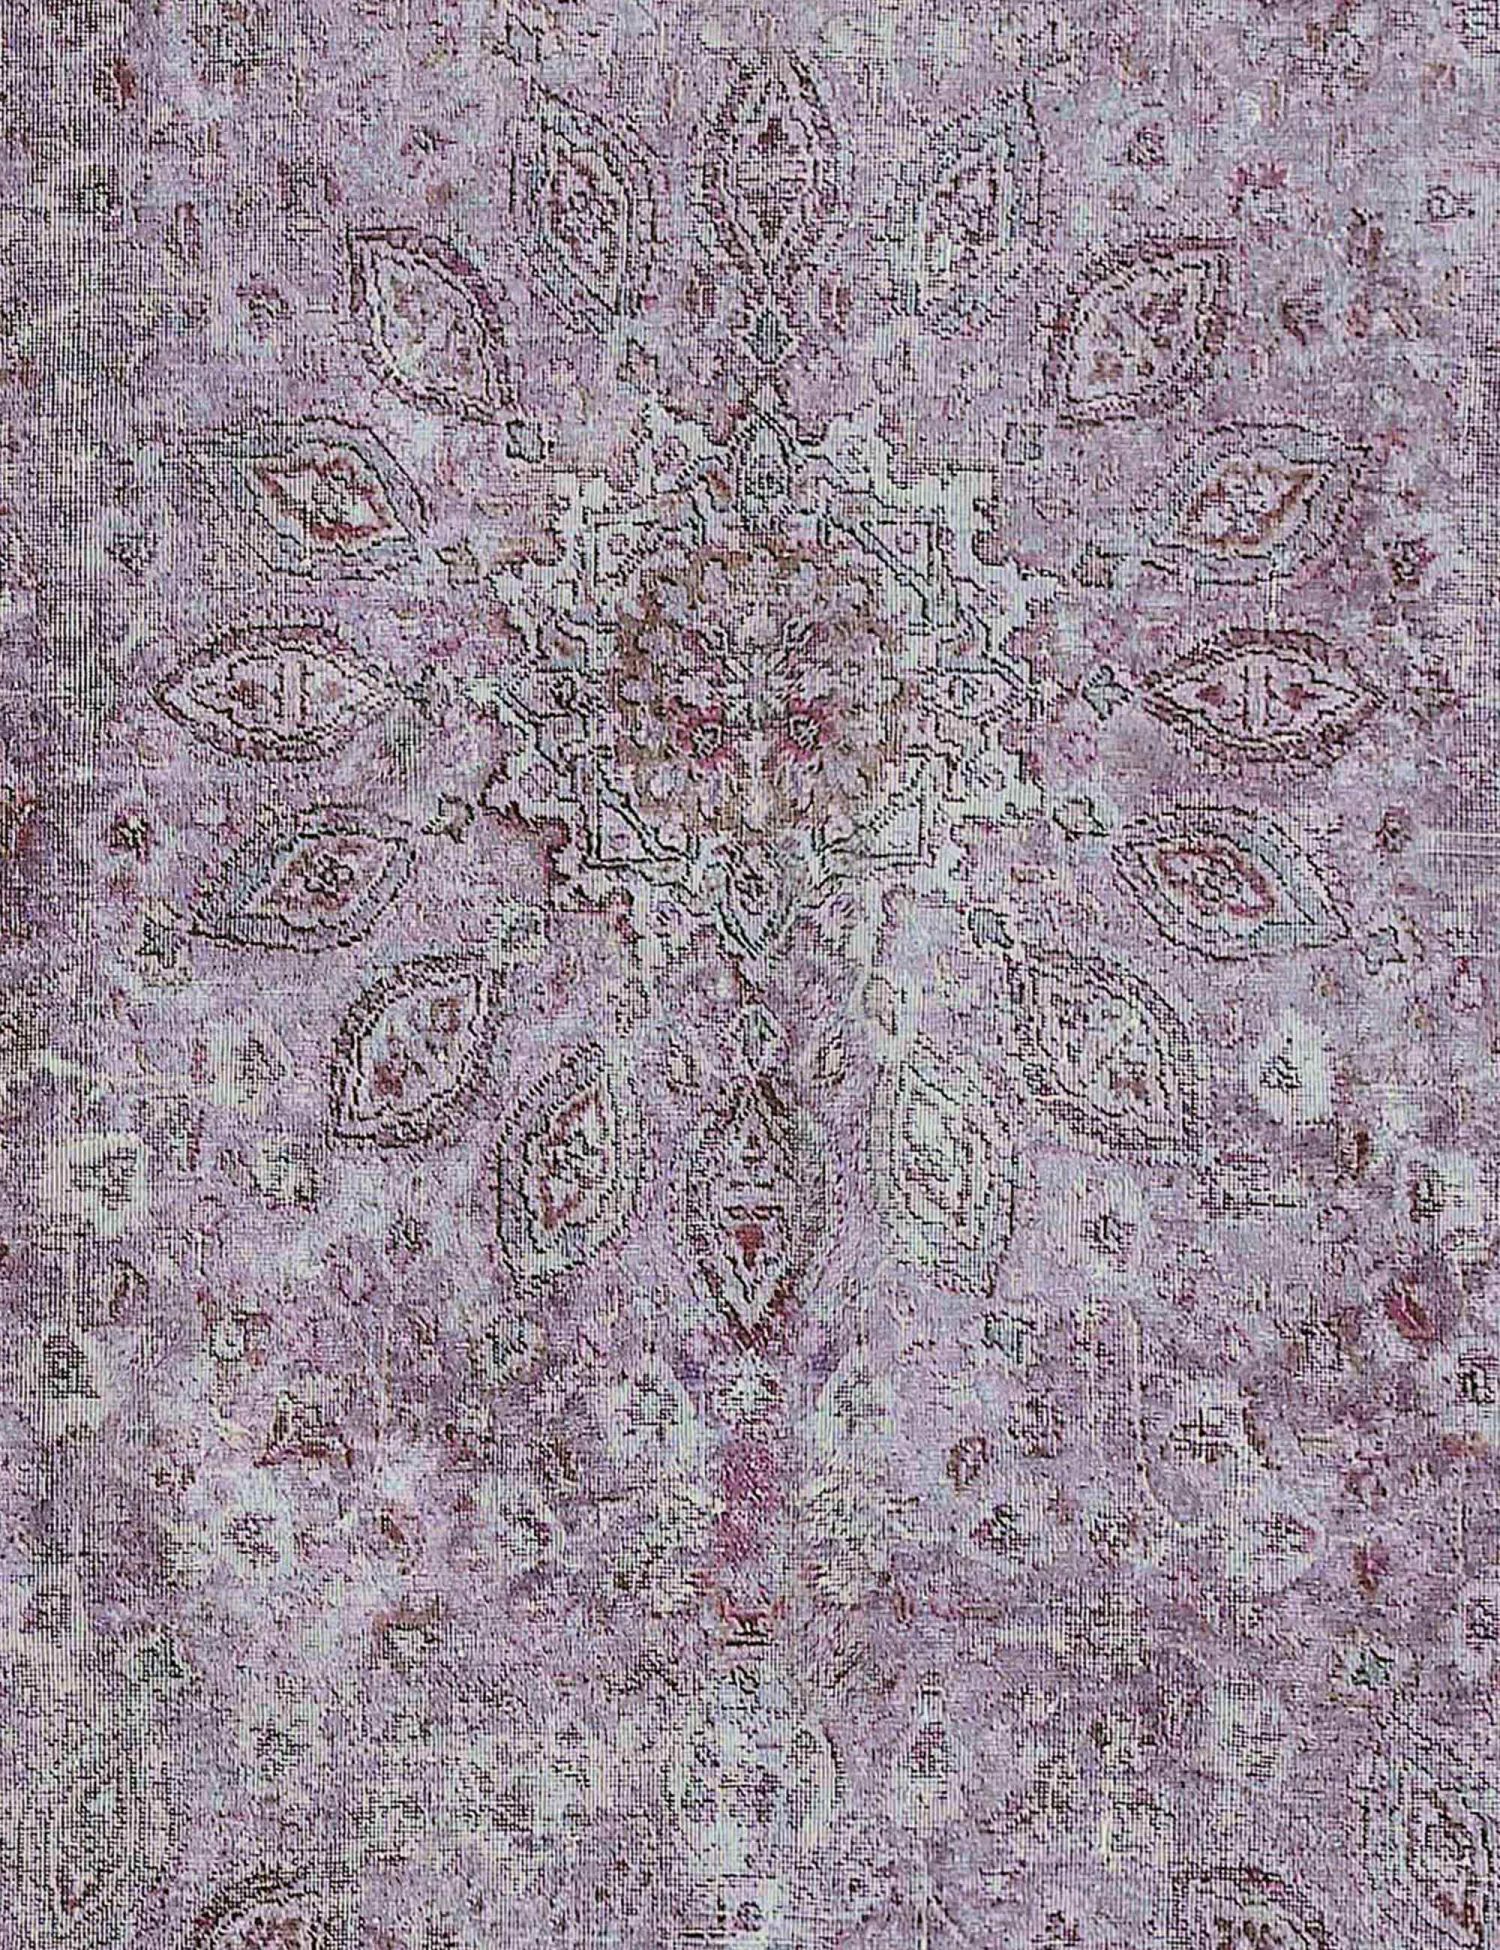 Persischer Vintage Teppich  lila <br/>176 x 176 cm